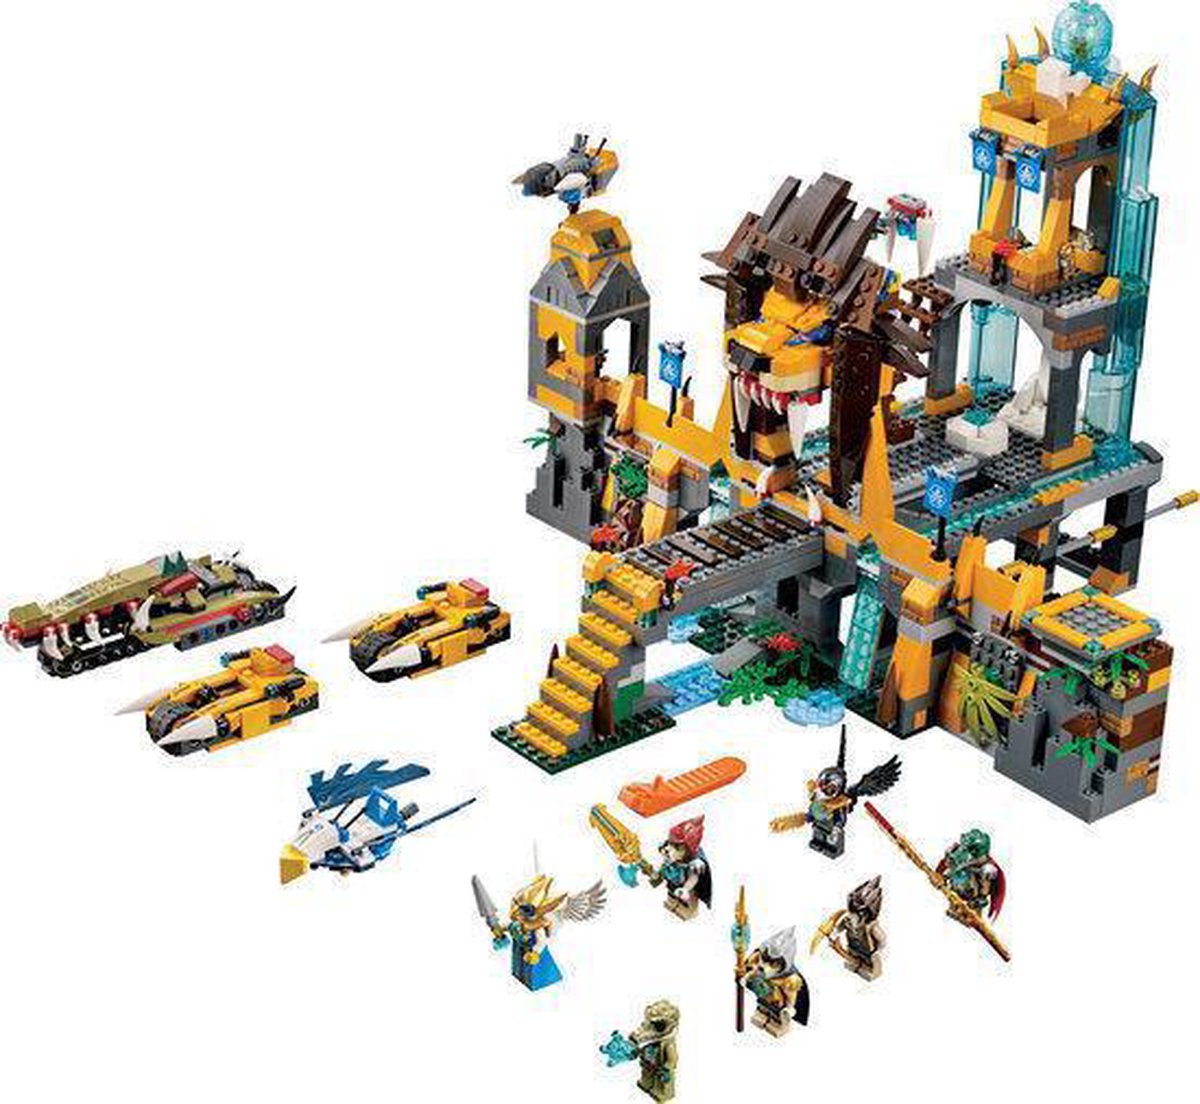 LEGO Chima De Leeuwen Chi Tempel - 70010 | bol.com